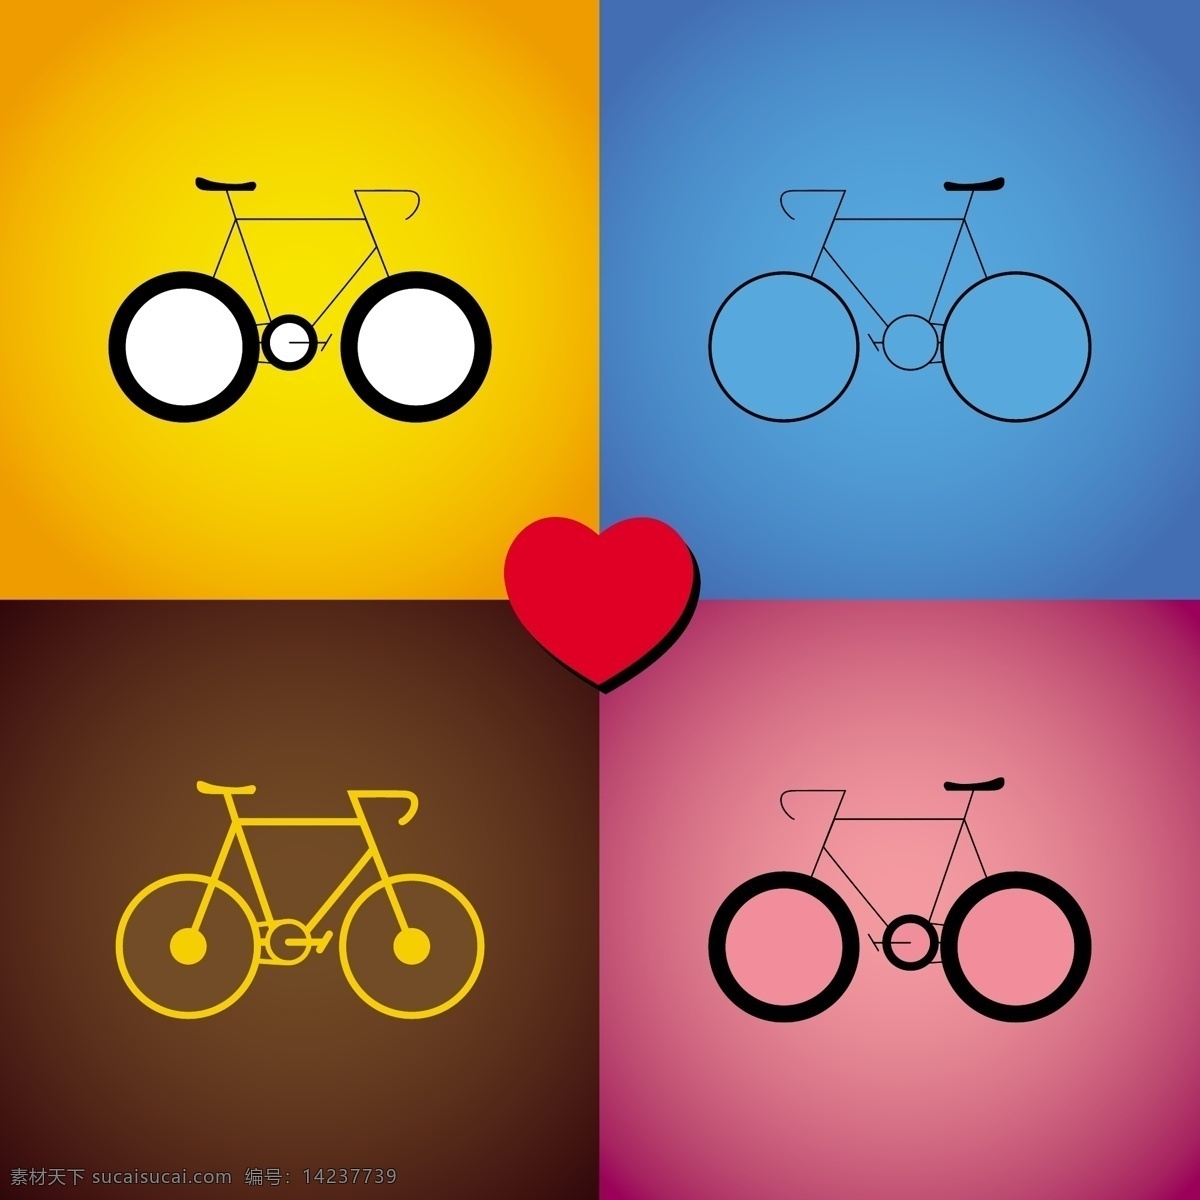 自行车图标集 心 爱 图标 自行车 丰富多彩 交通 车辆 图标集 心脏图标 集 收集 彩色 黄色